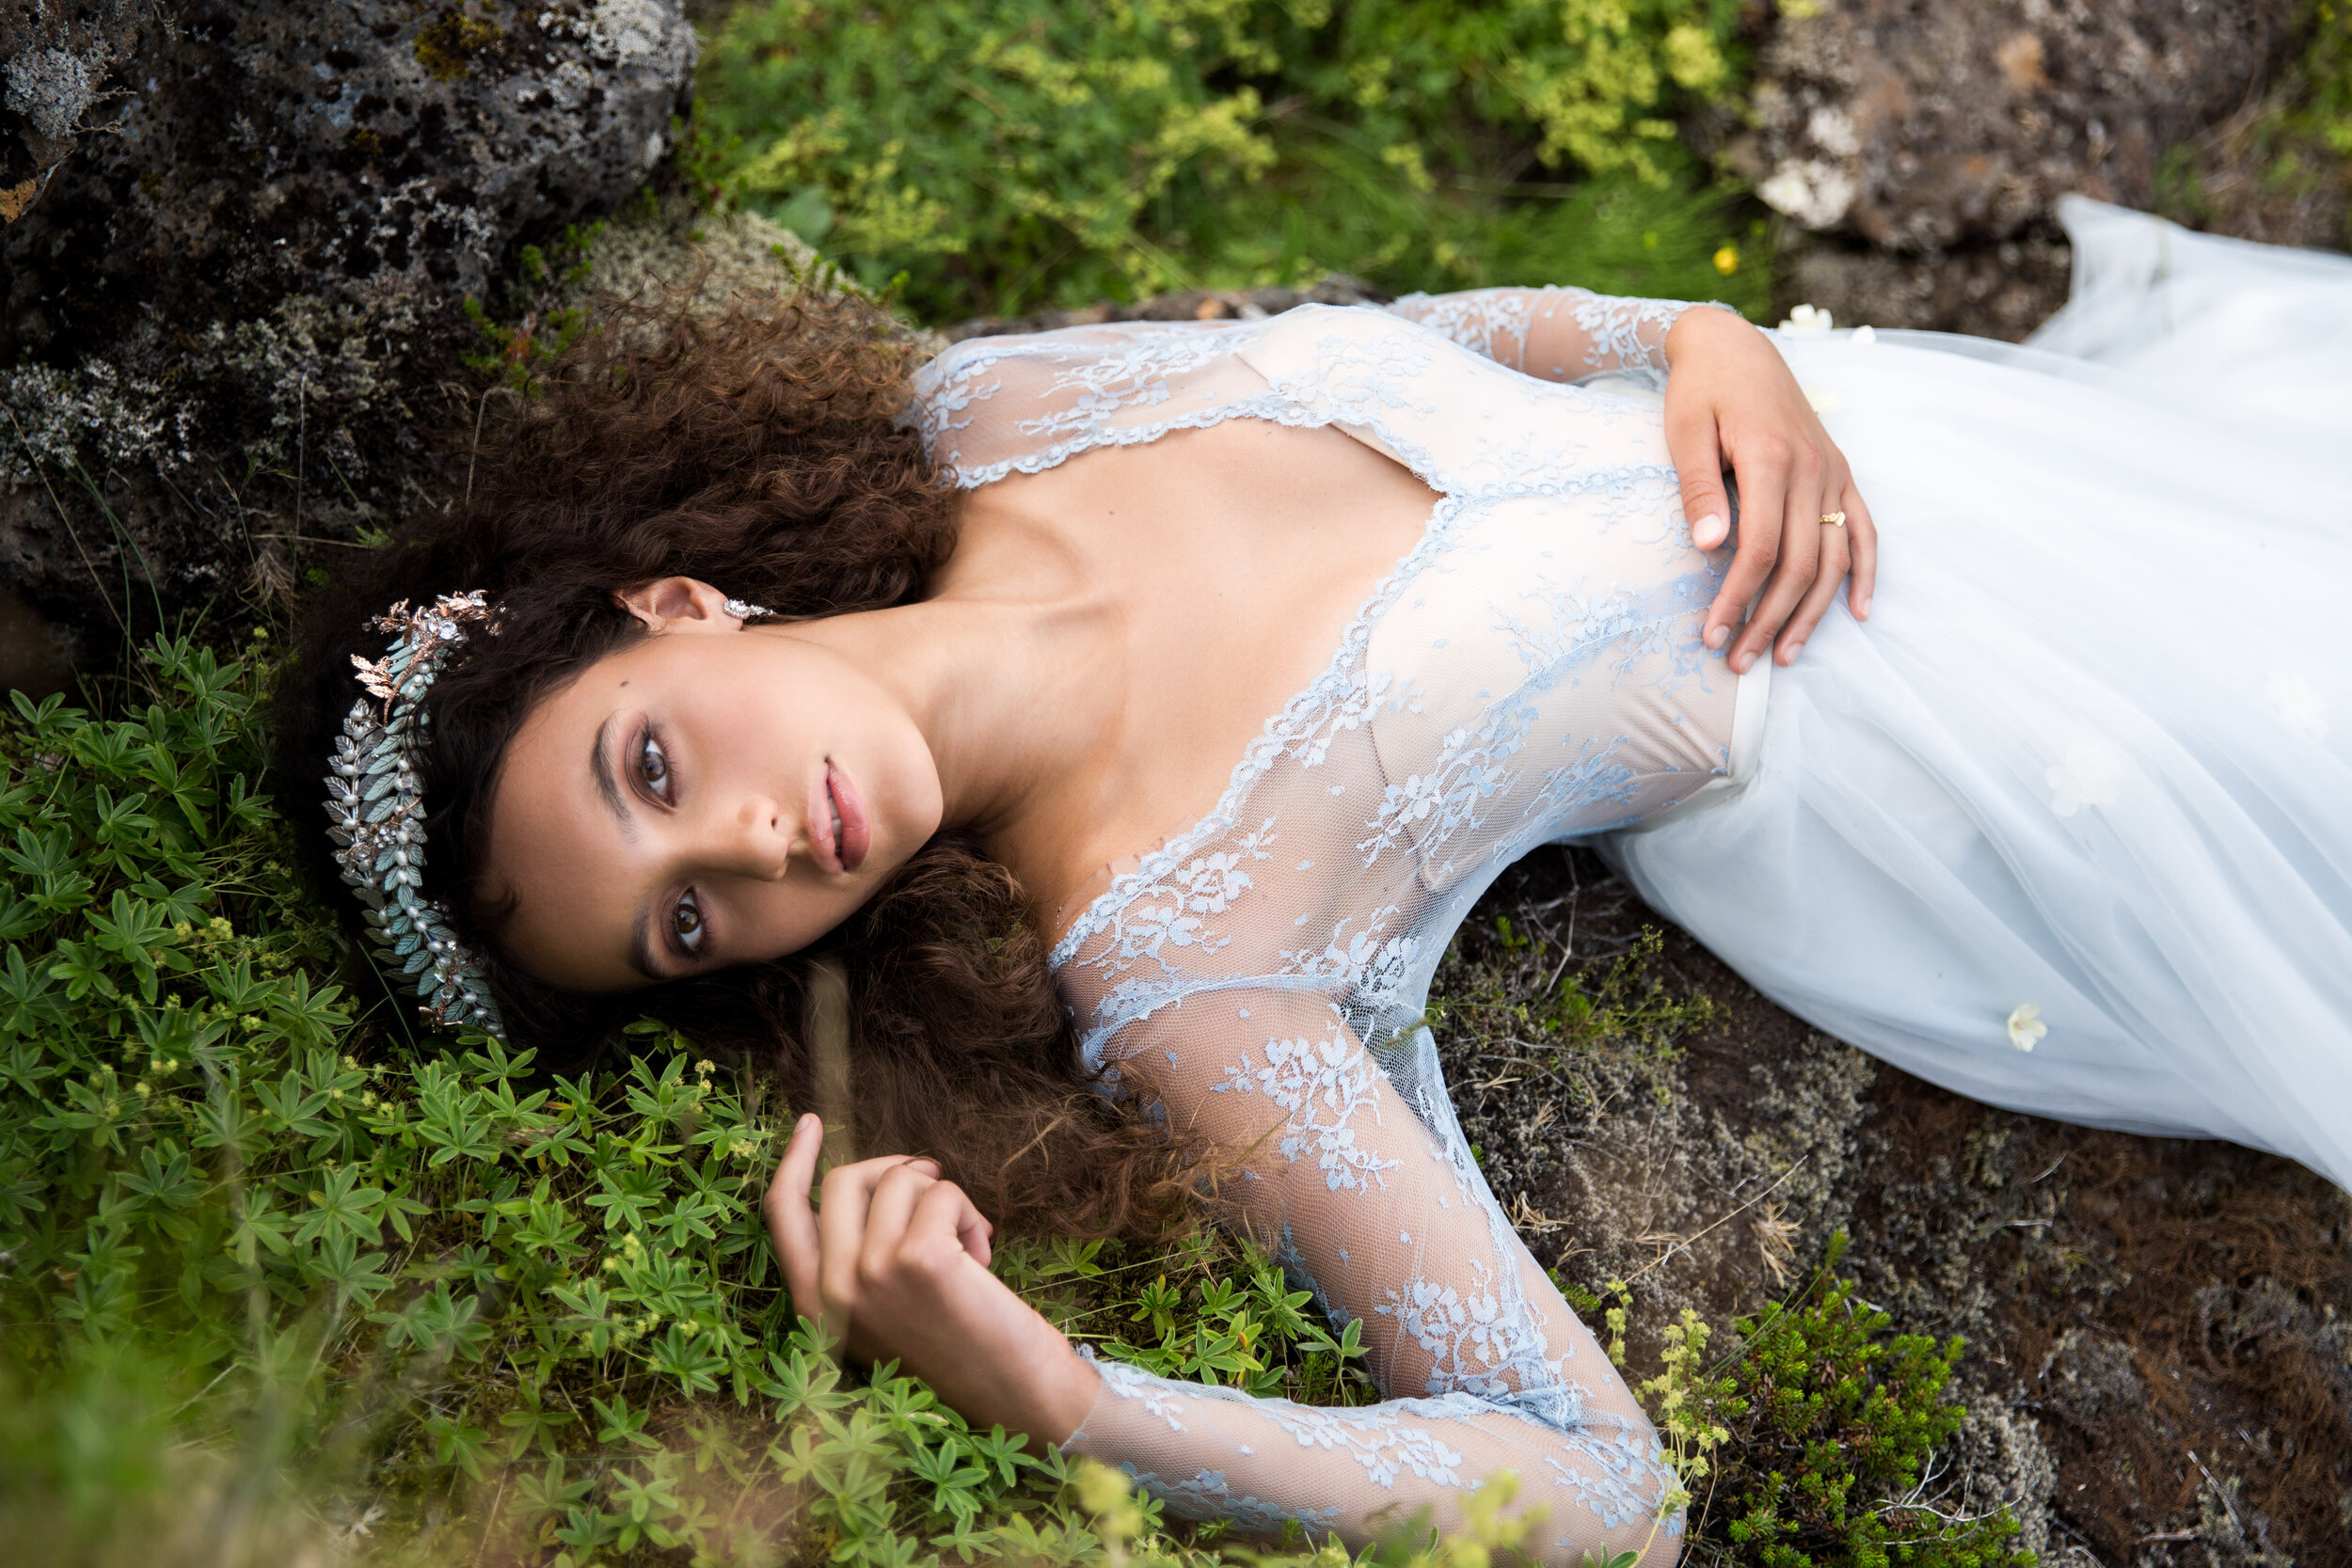 Amapola floral-lace gown — Mignonette Bridal